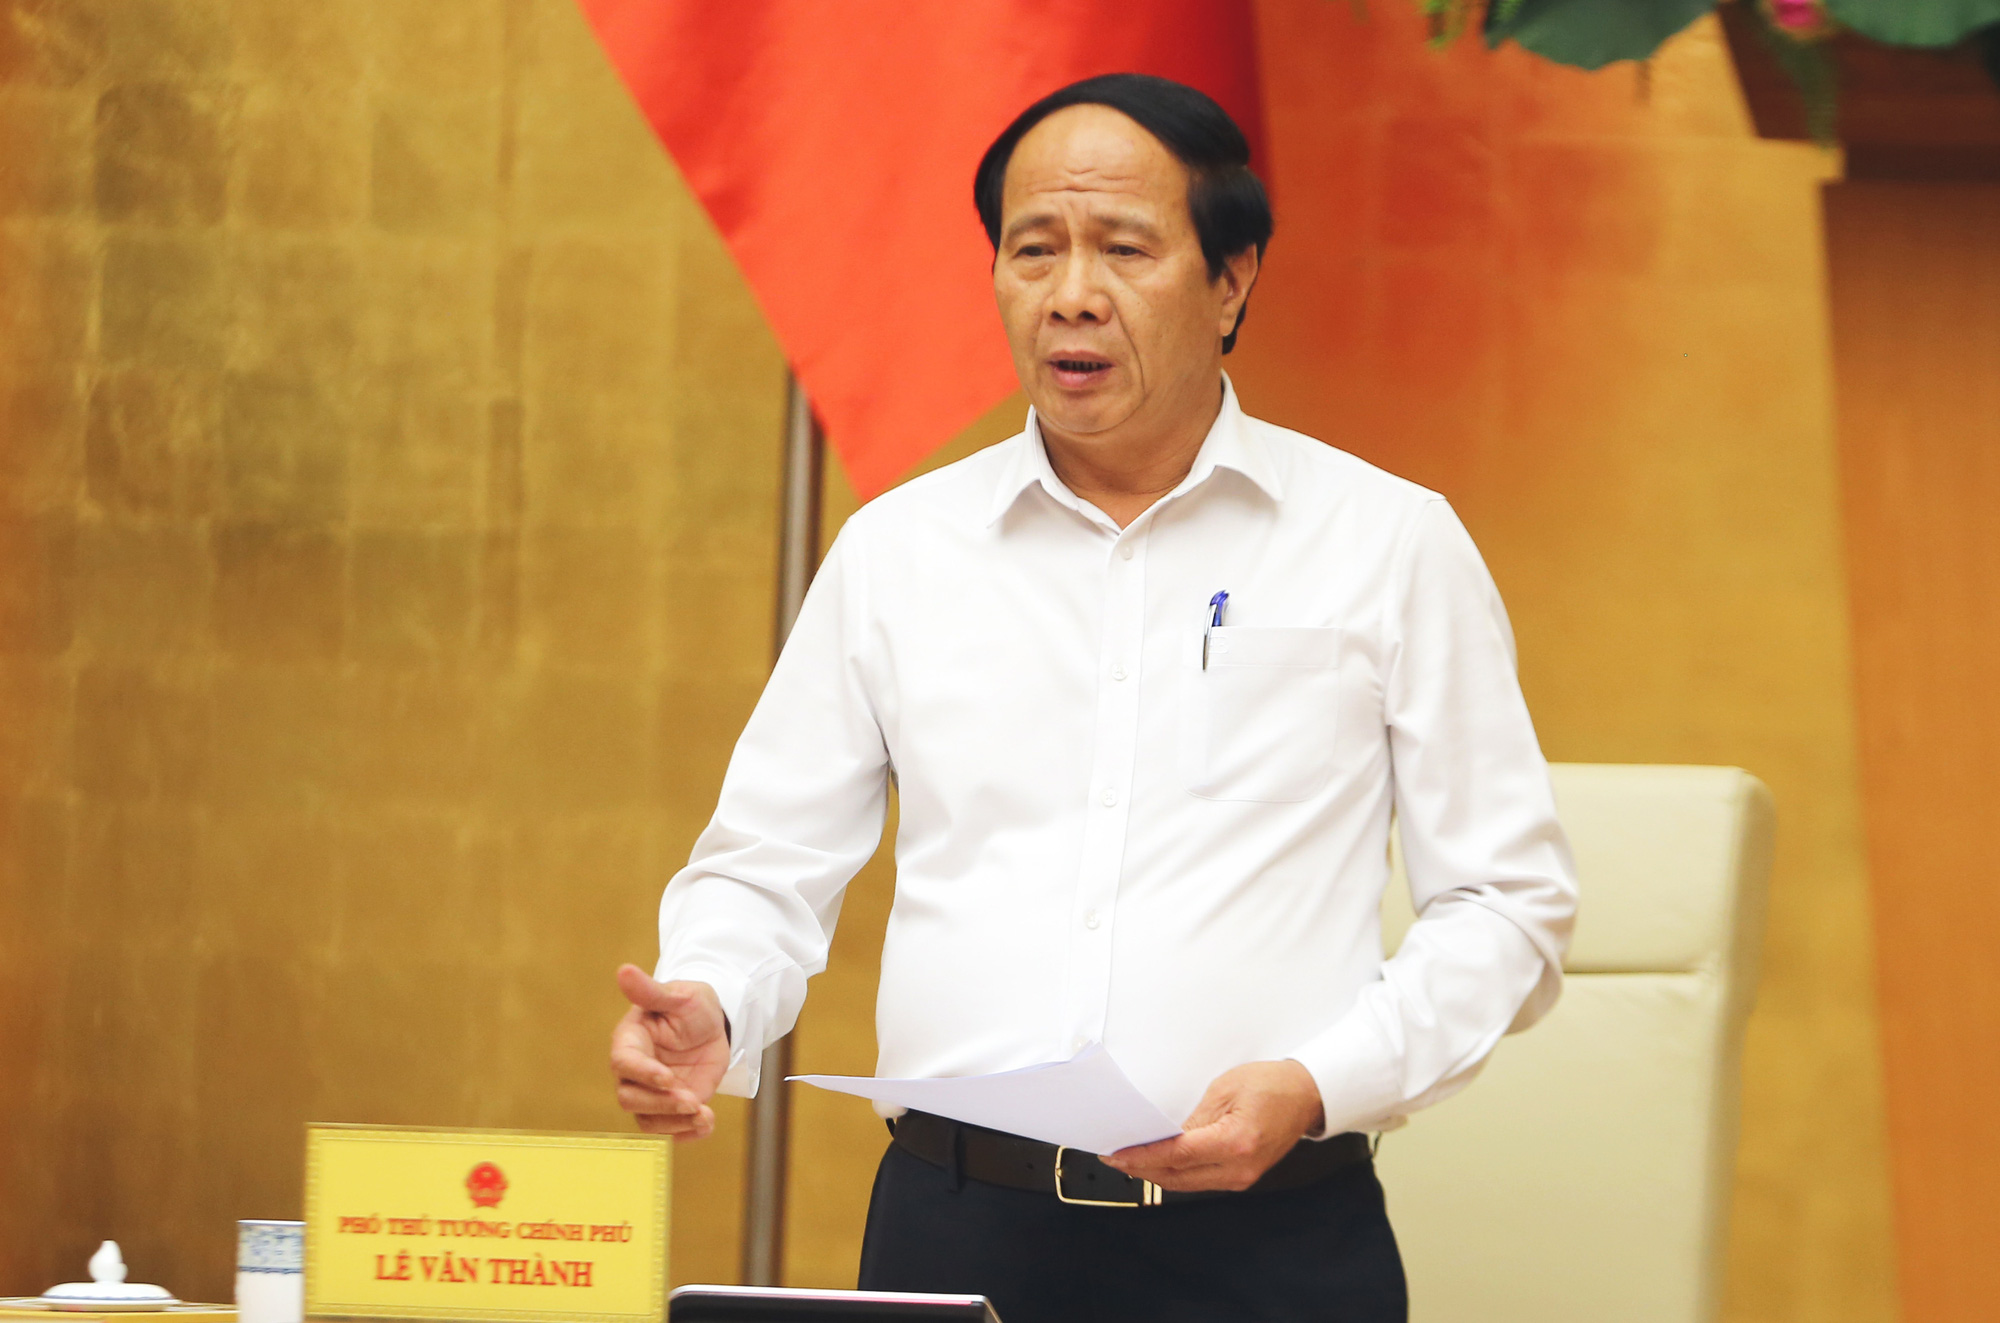 Phó Thủ tướng Lê Văn Thành được phân công đảm nhận thêm chức danh mới - Ảnh 1.